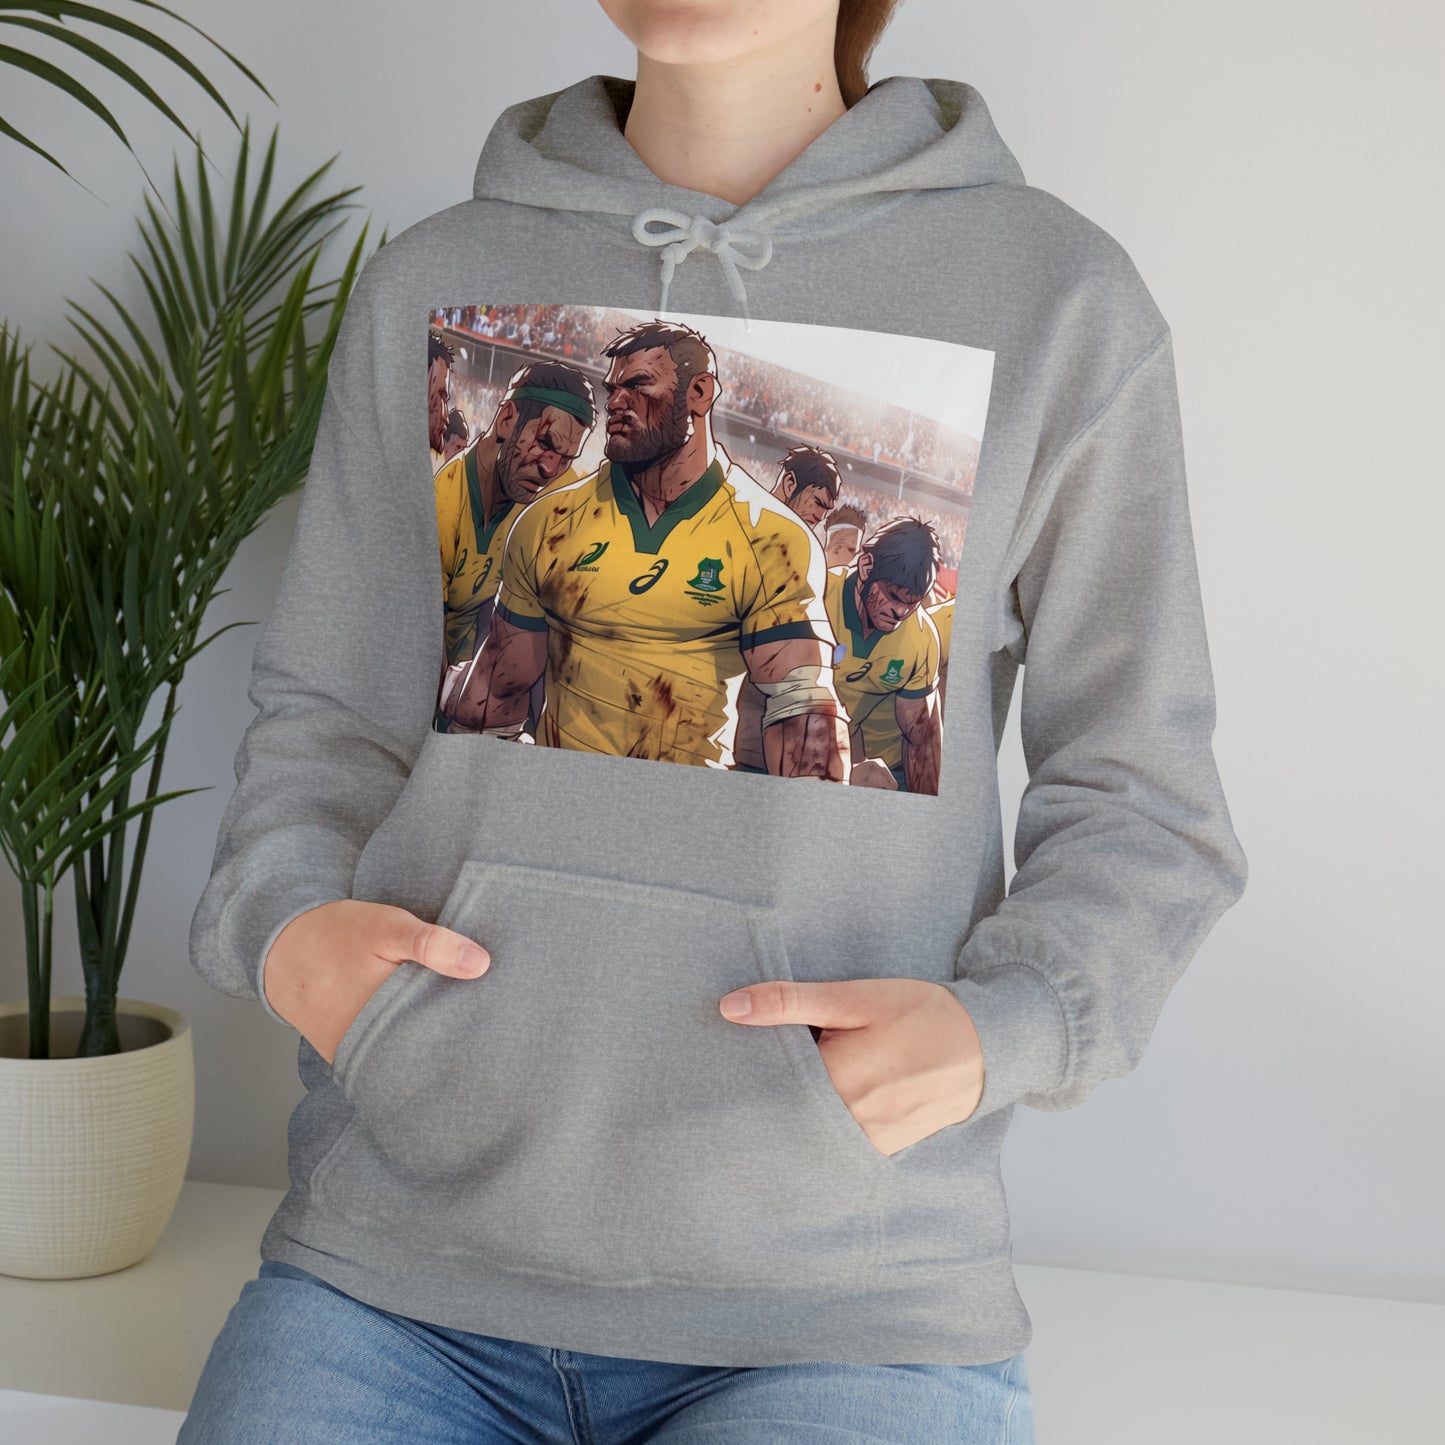 Aussie Aussie Aussie - light hoodies